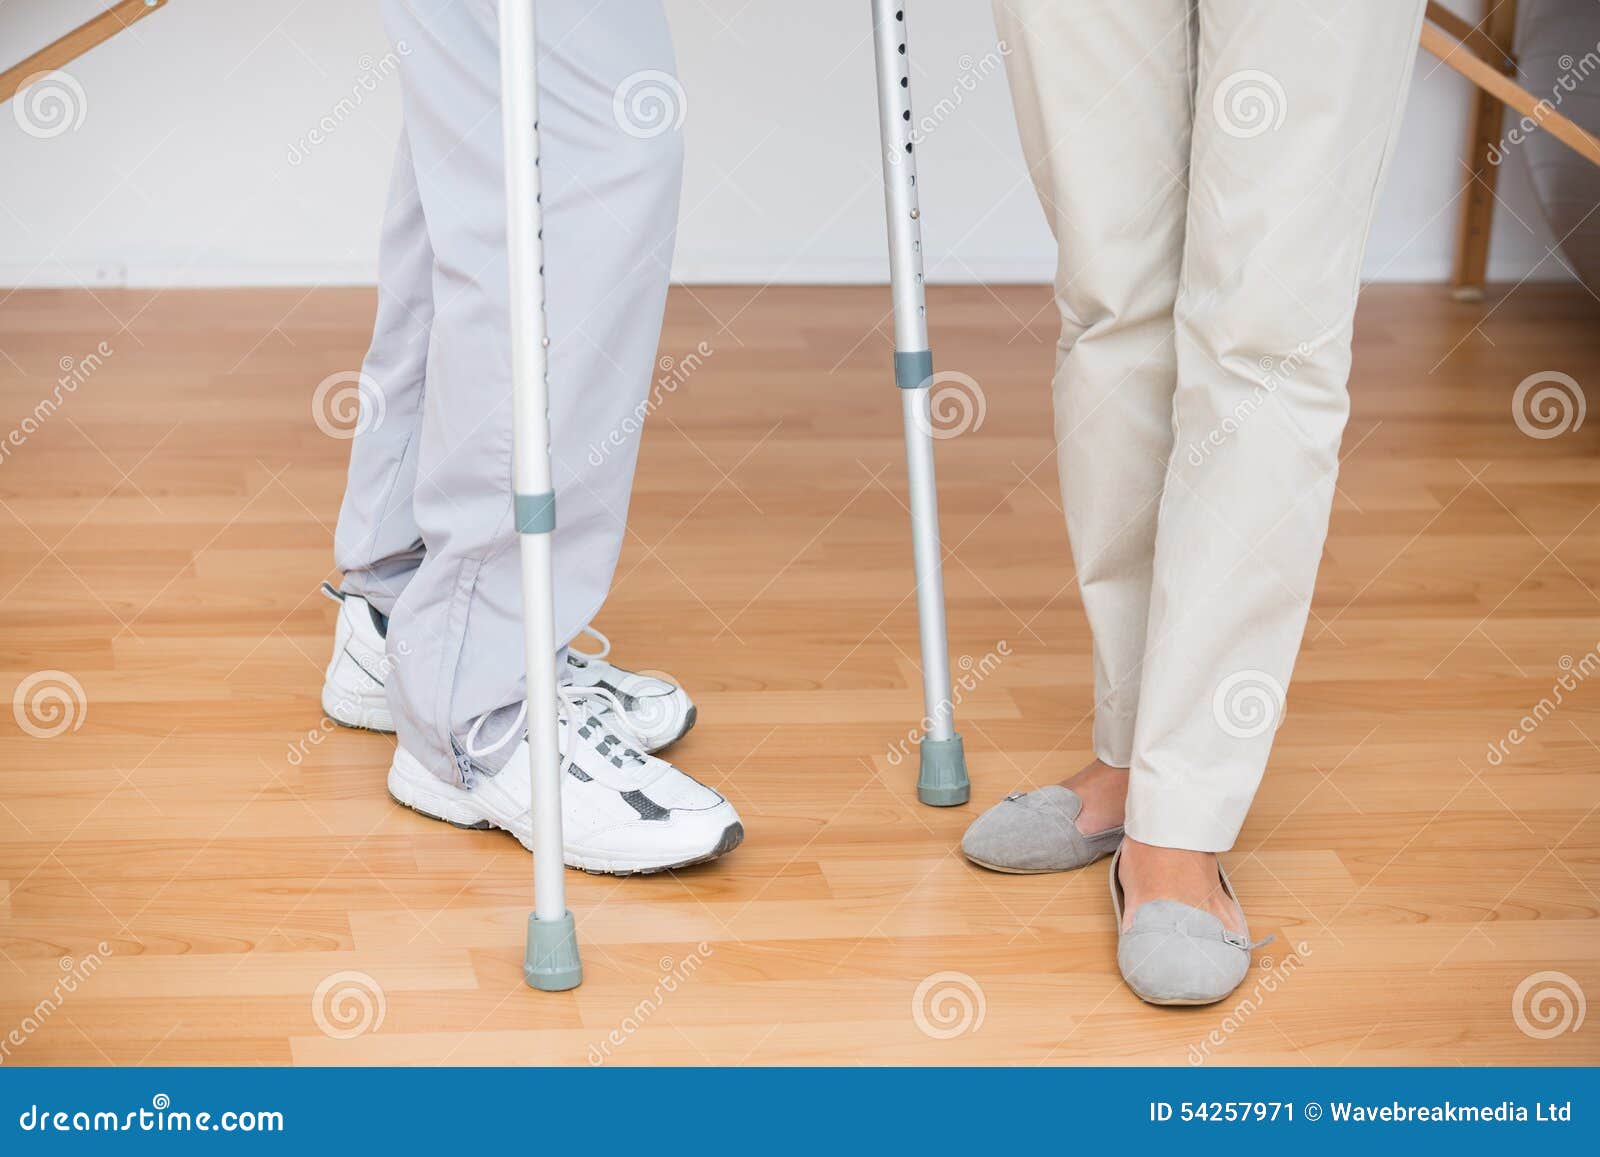 Сколько нужно ходить на костылях после эндопротезирования. Как ходить на костылях после эндопротезирования коленного сустава. Как правильно ходить на костылях с одной ногой. Какие лучше костыли после операции на колено. Bad Patient gets up Crutch.